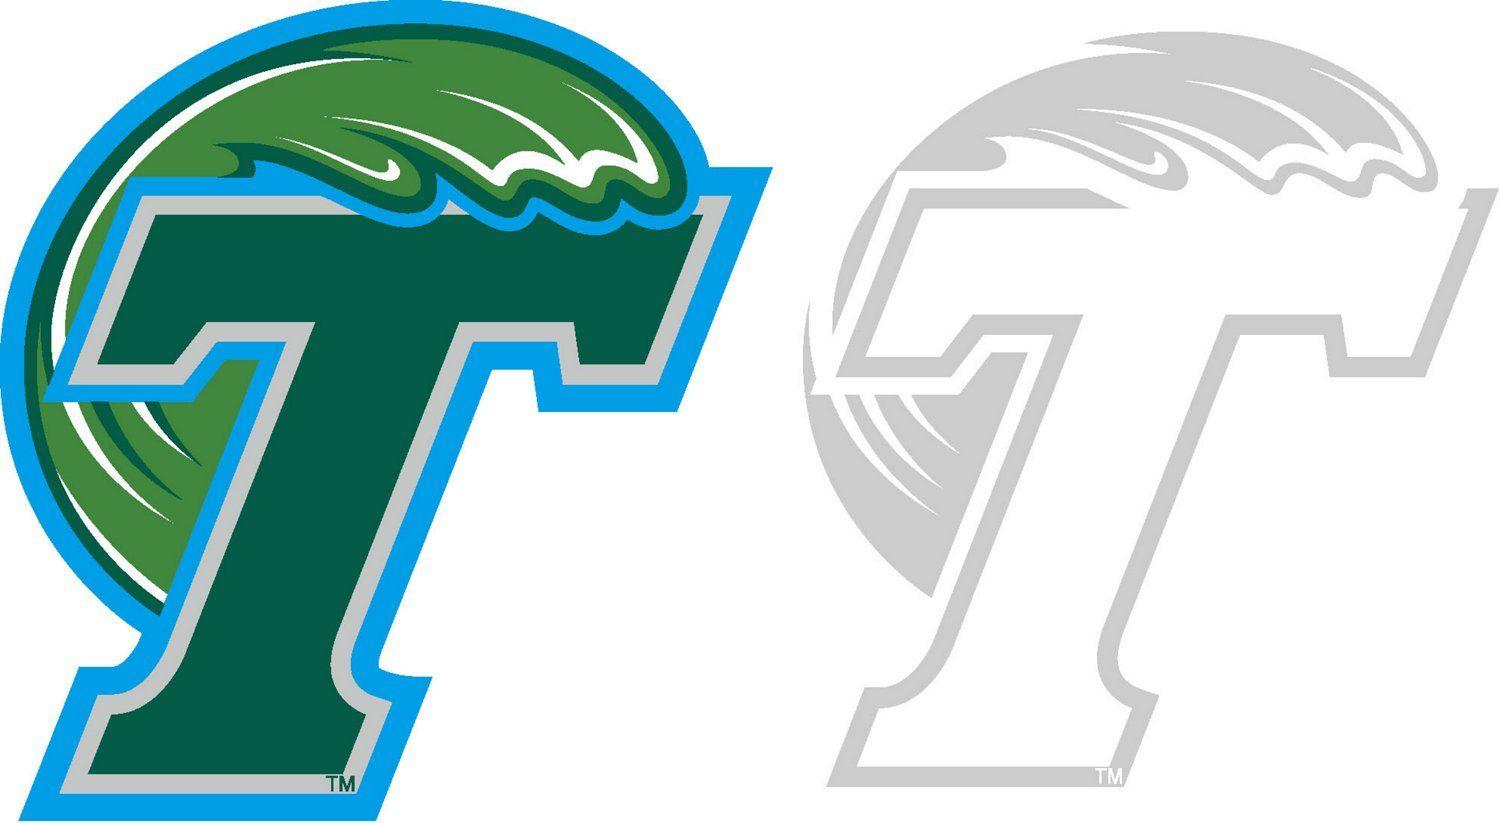 Tulane Logo - Stockdale Tulane University 4 X 7 Logo Decals 2 Pack